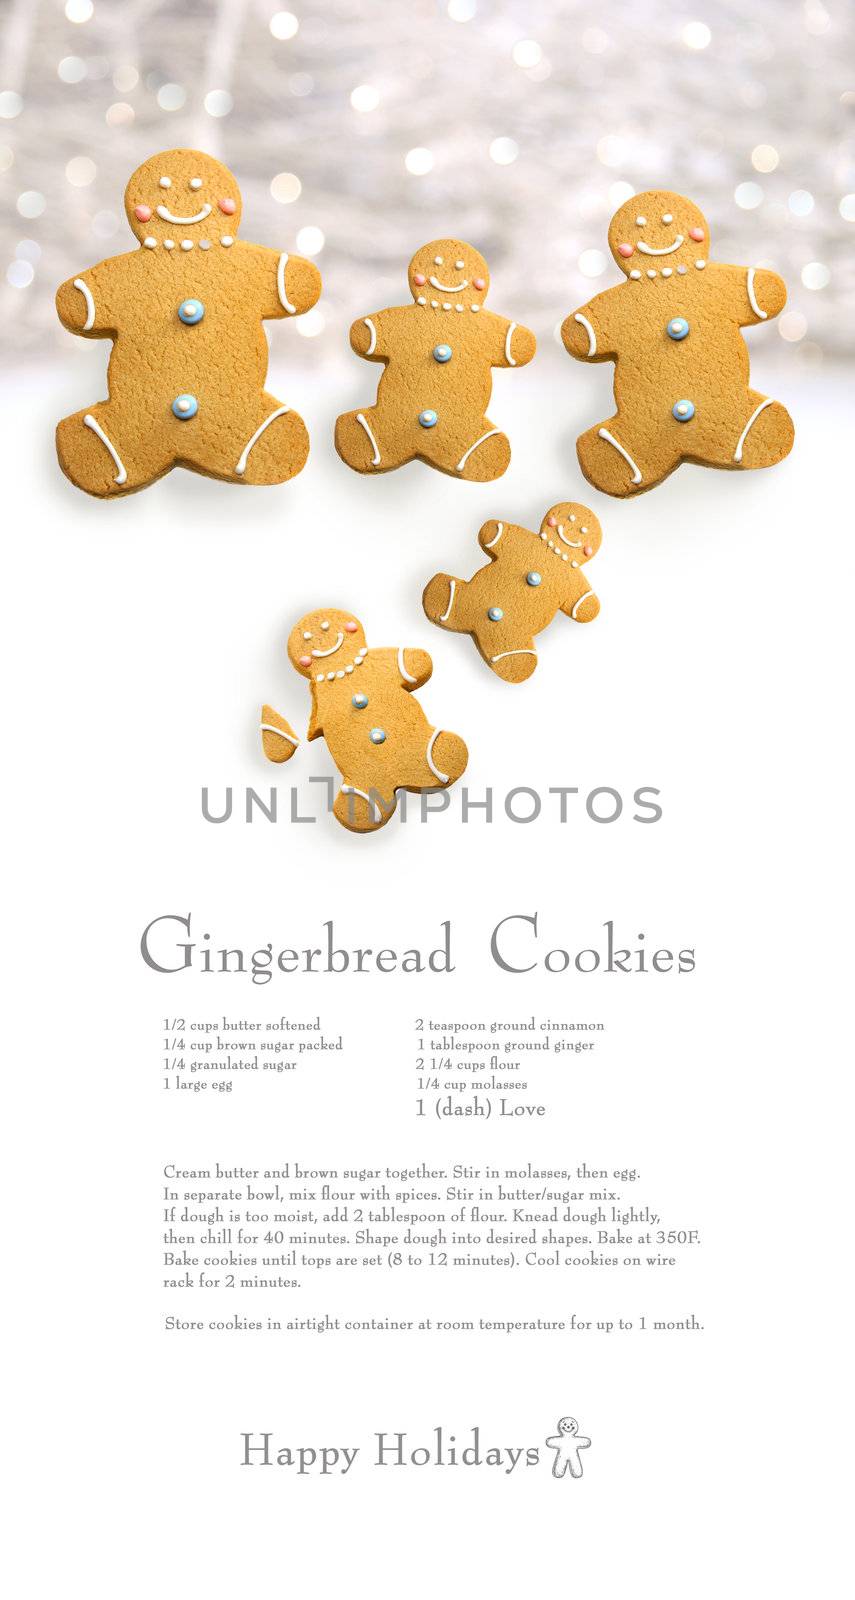 Gingerbread men cookies against cookie receipe